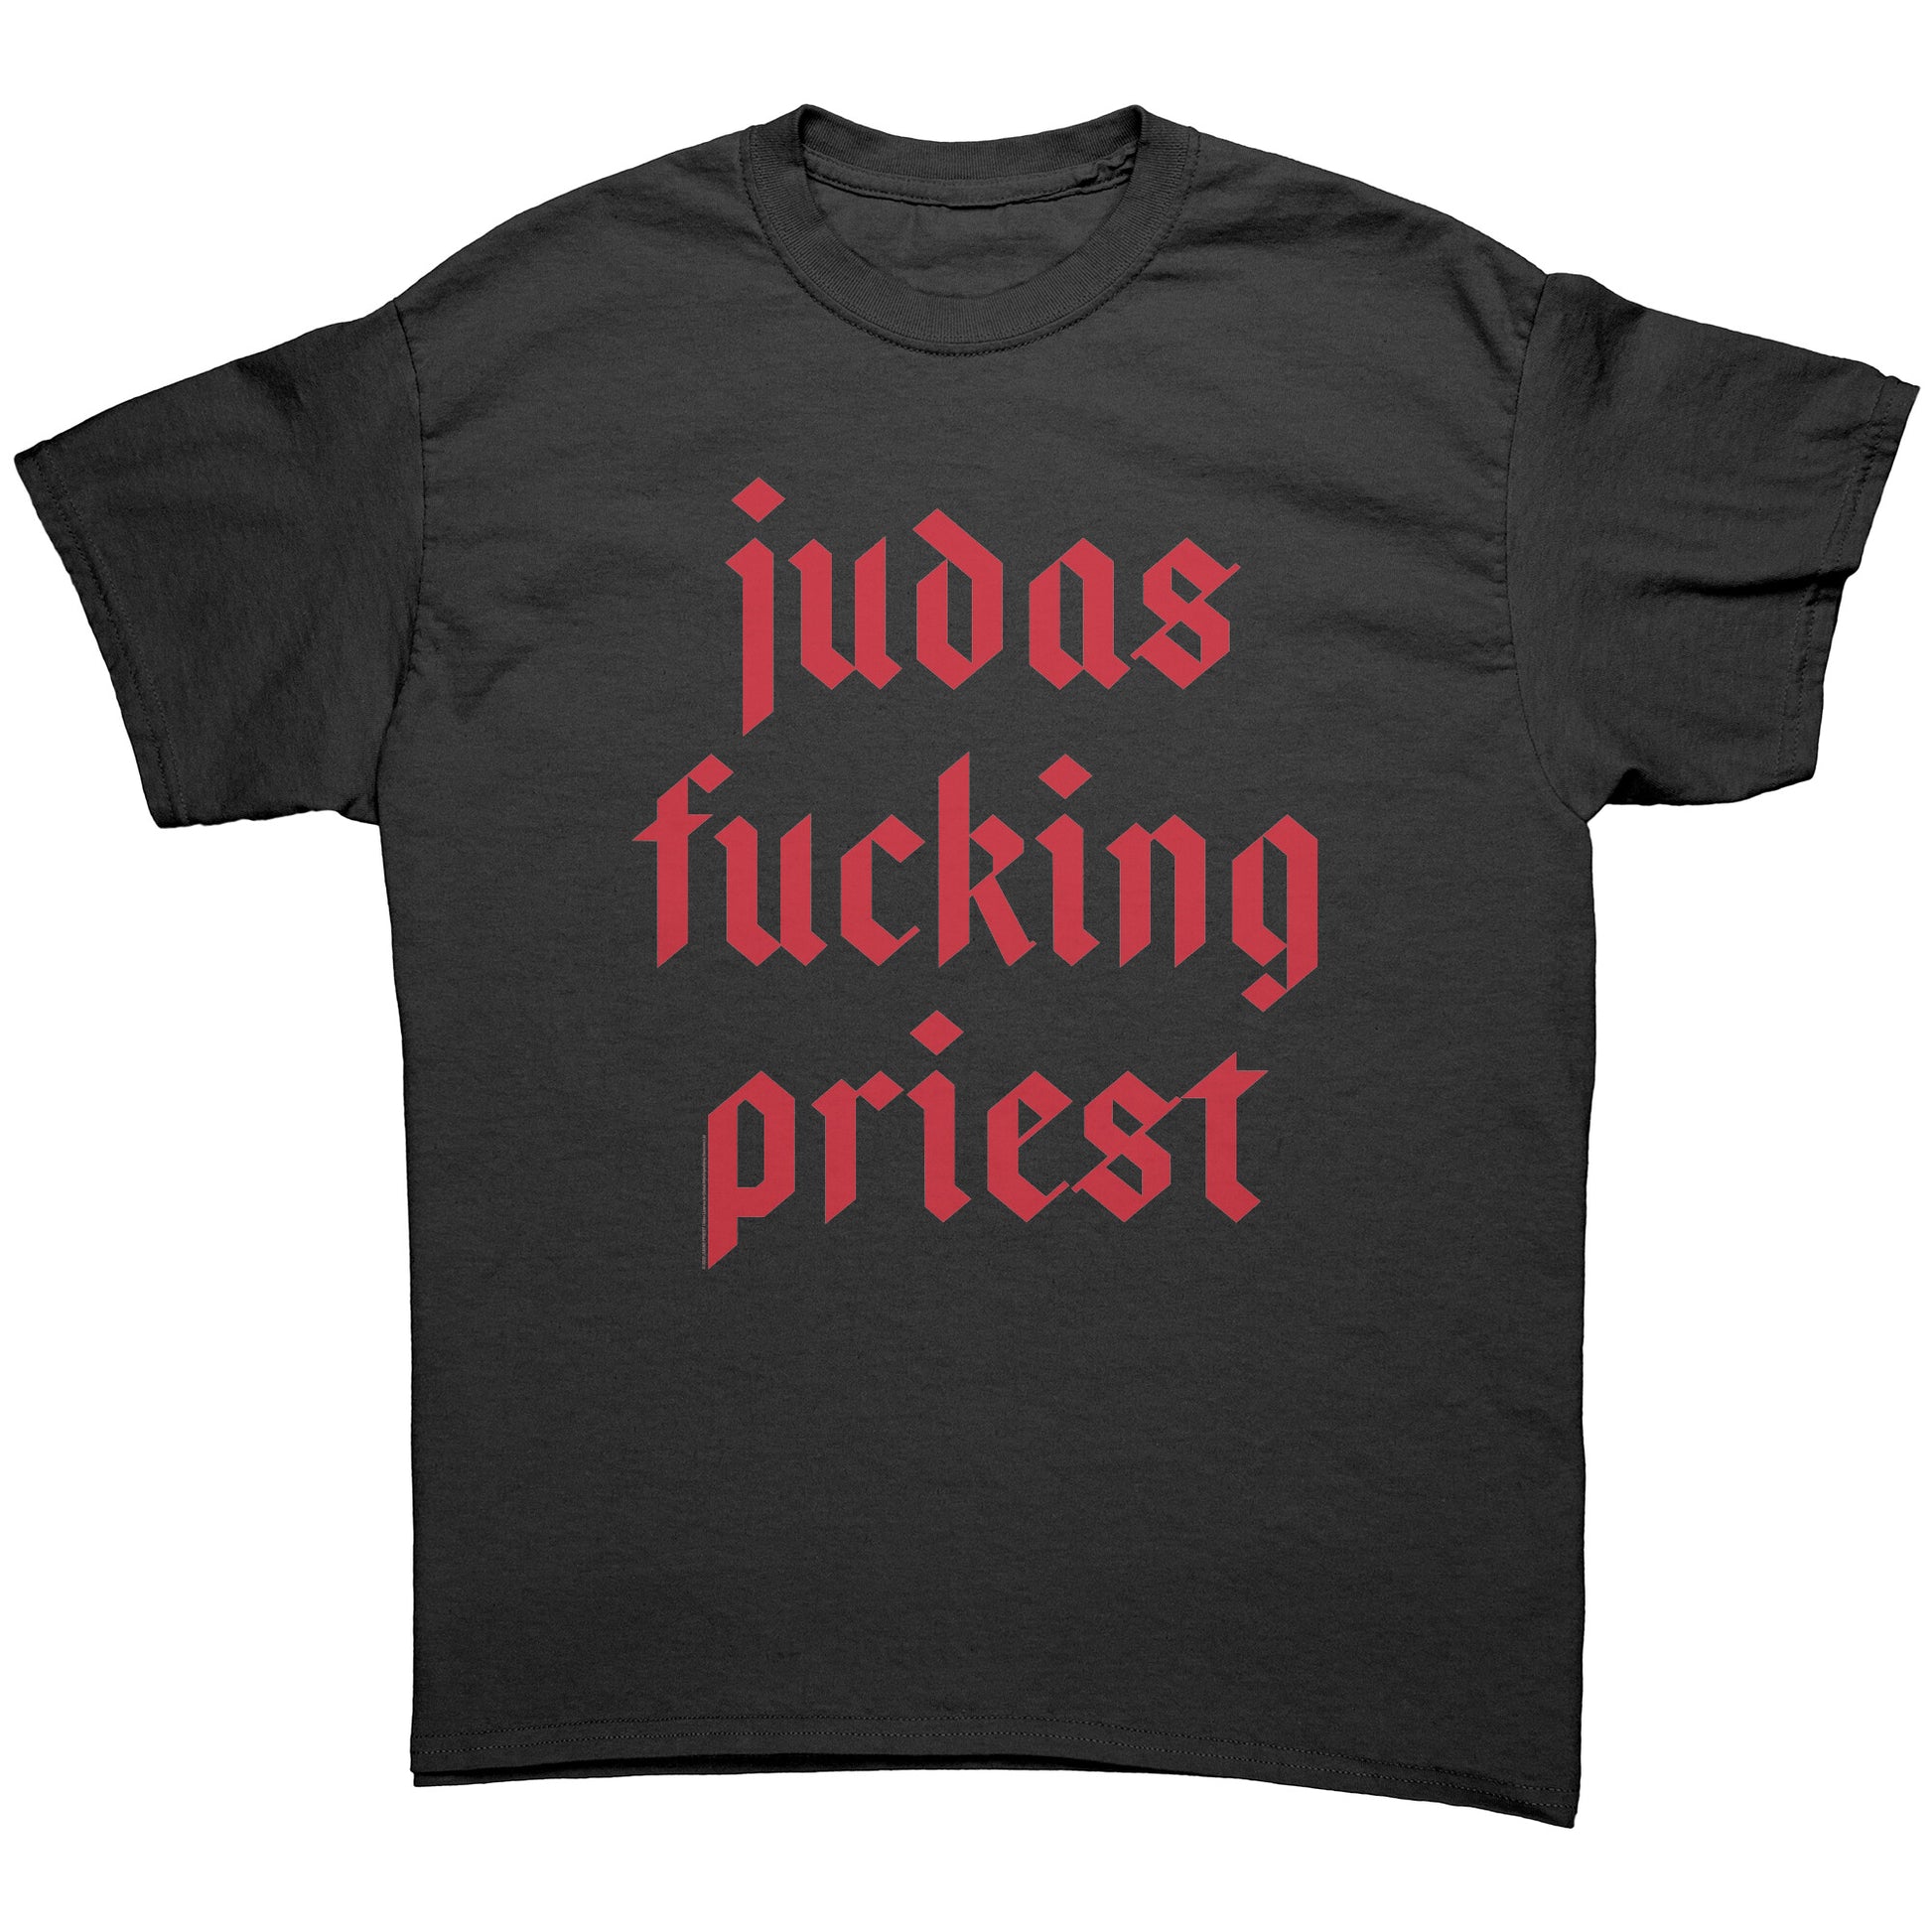 Judas Fucking Priest Tee